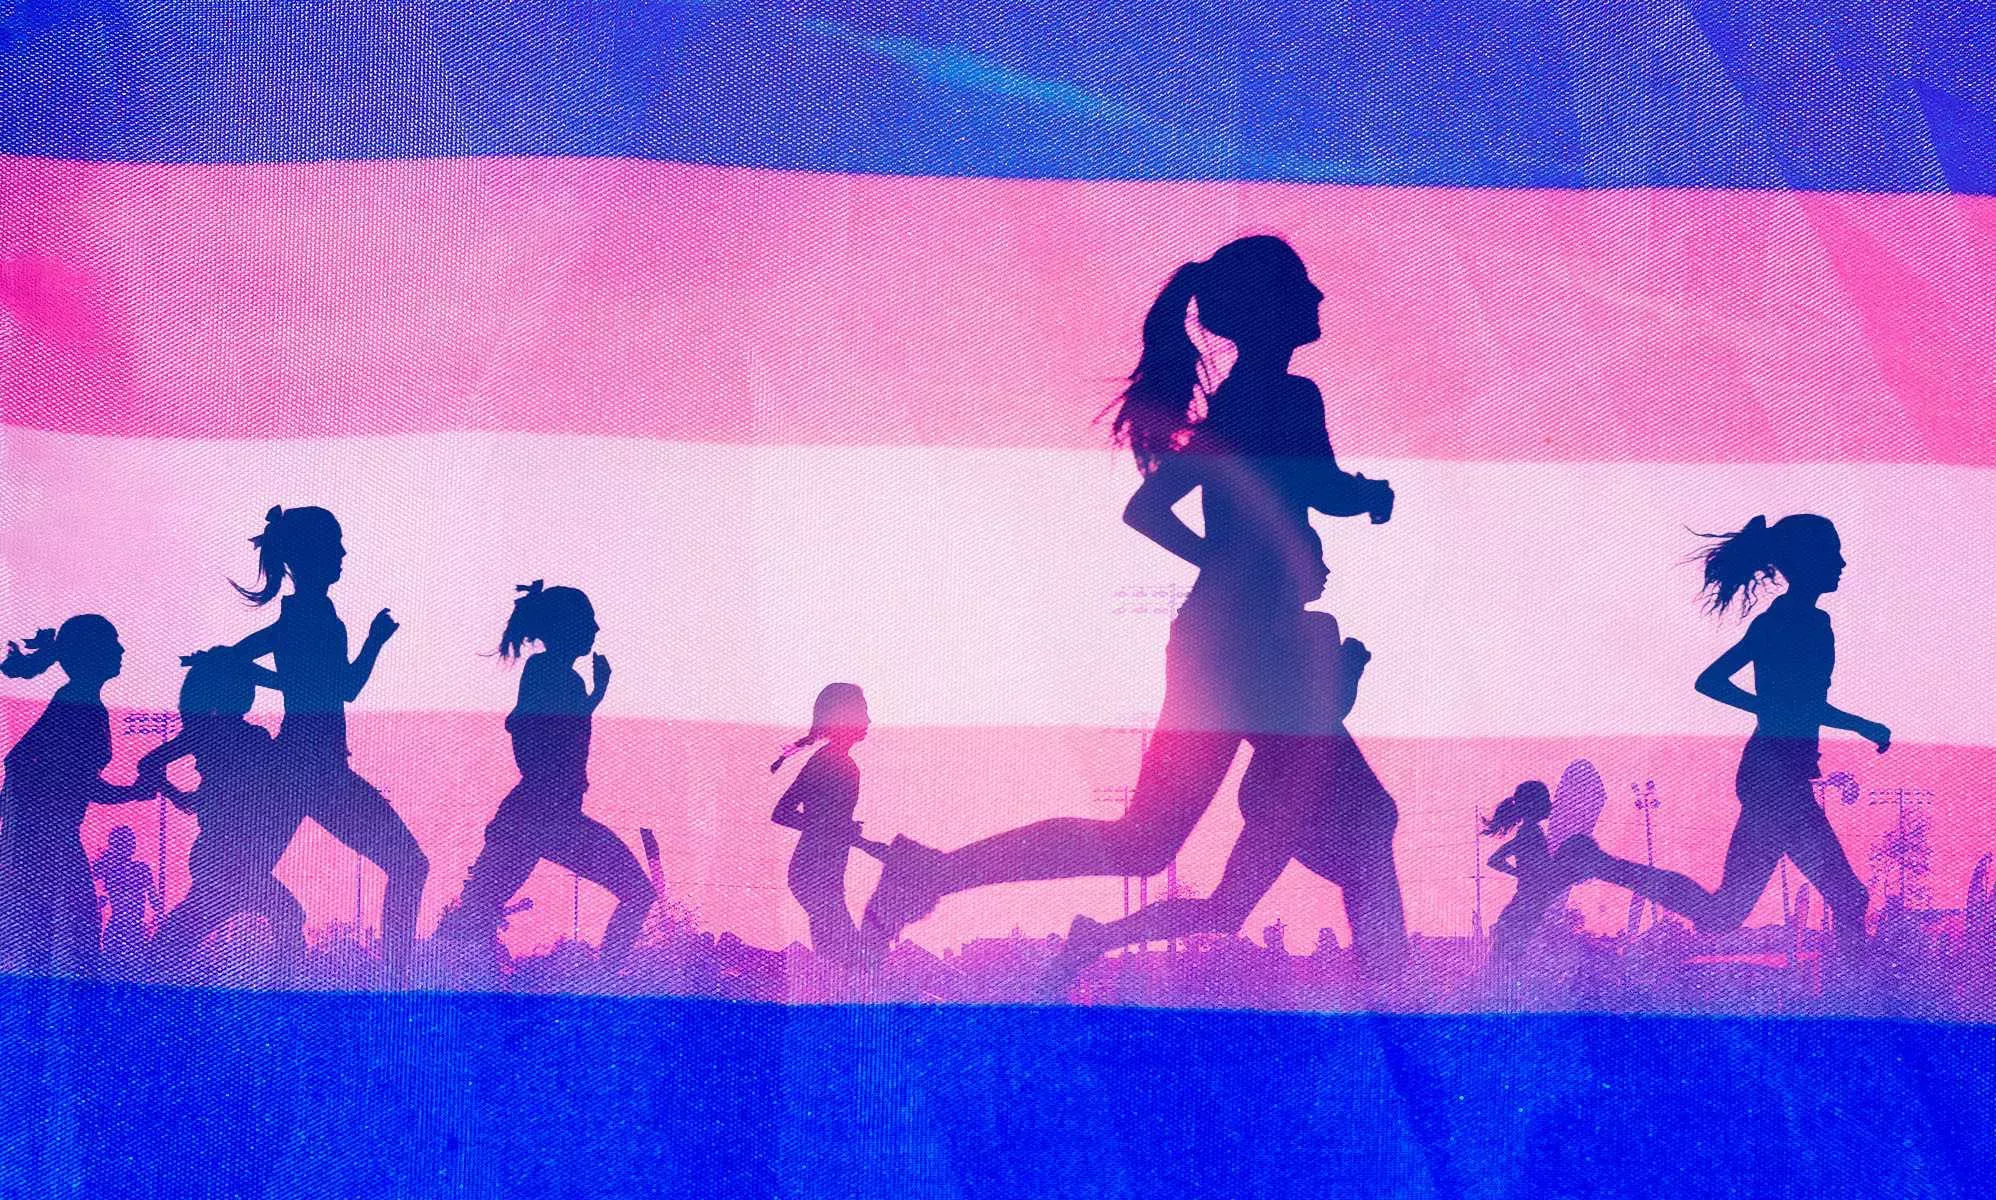 Según un estudio respaldado por el COI, los deportistas trans podrían estar en desventaja física en algunos aspectos